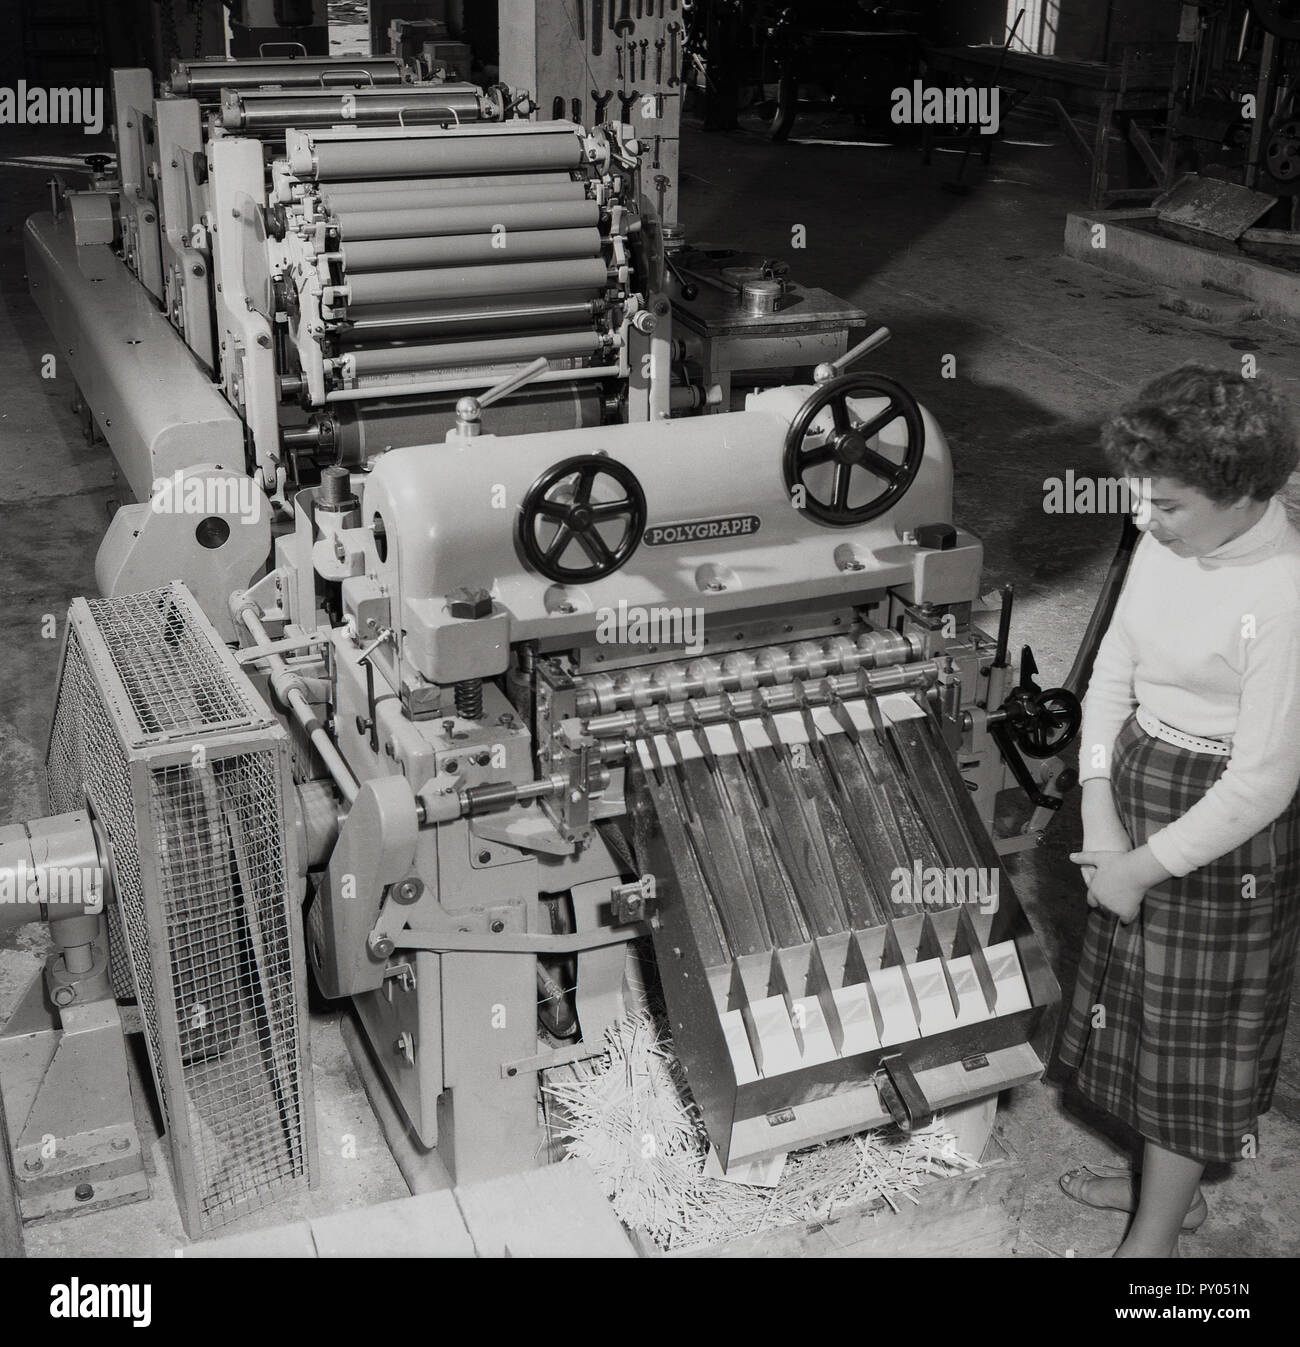 1950, histórico, una trabajadora de pie por una gran máquina de impresión larga, mostrando el amplio número de rotación de los rodillos de tinta utilizada en el proceso de impresión. Foto de stock